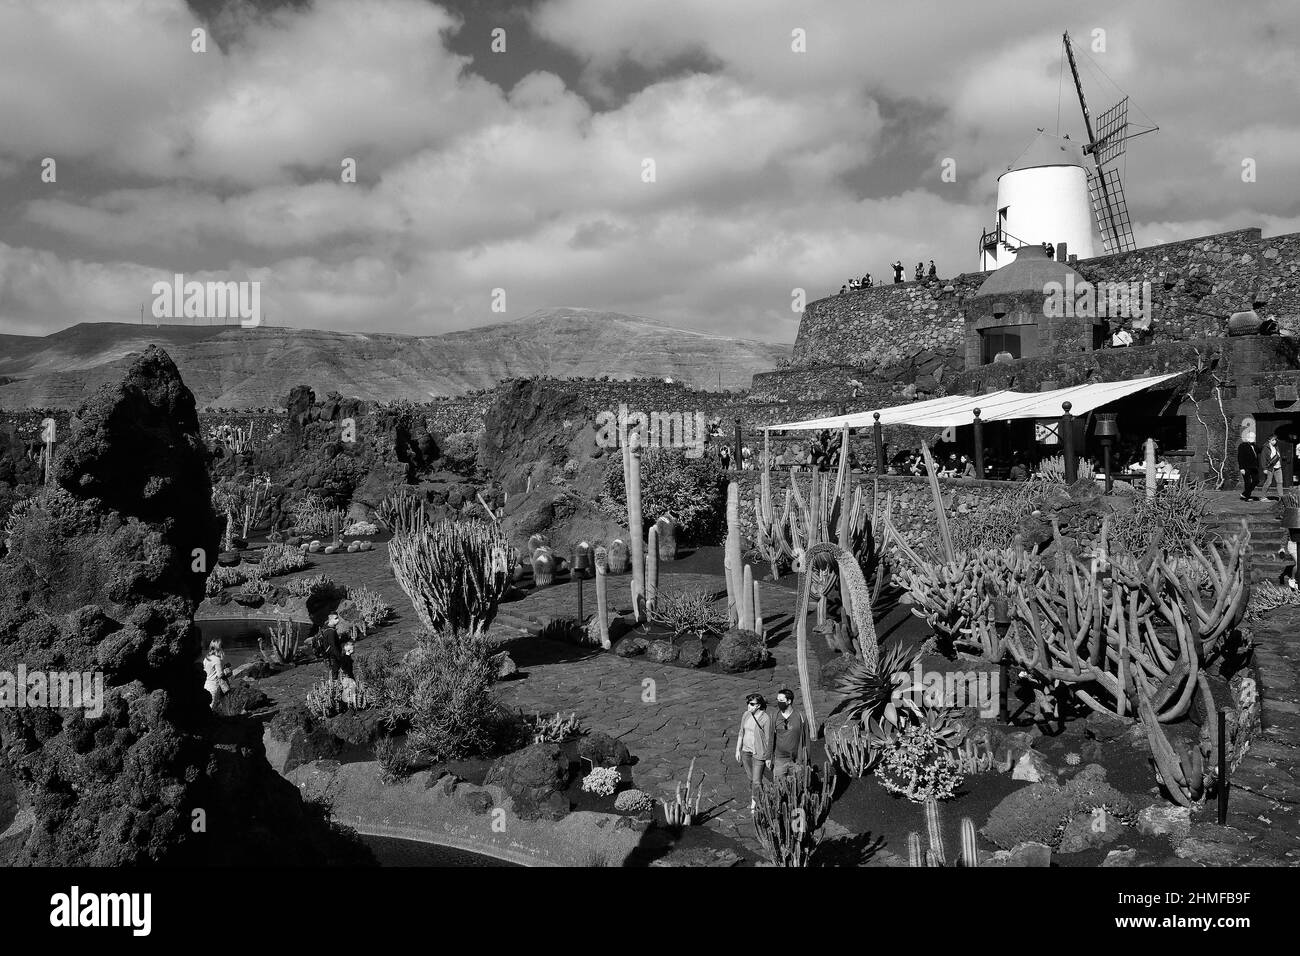 Black and white photograph, Jardin de Cactus, cactus garden in Guatiza, Lanzarote, Spain Stock Photo